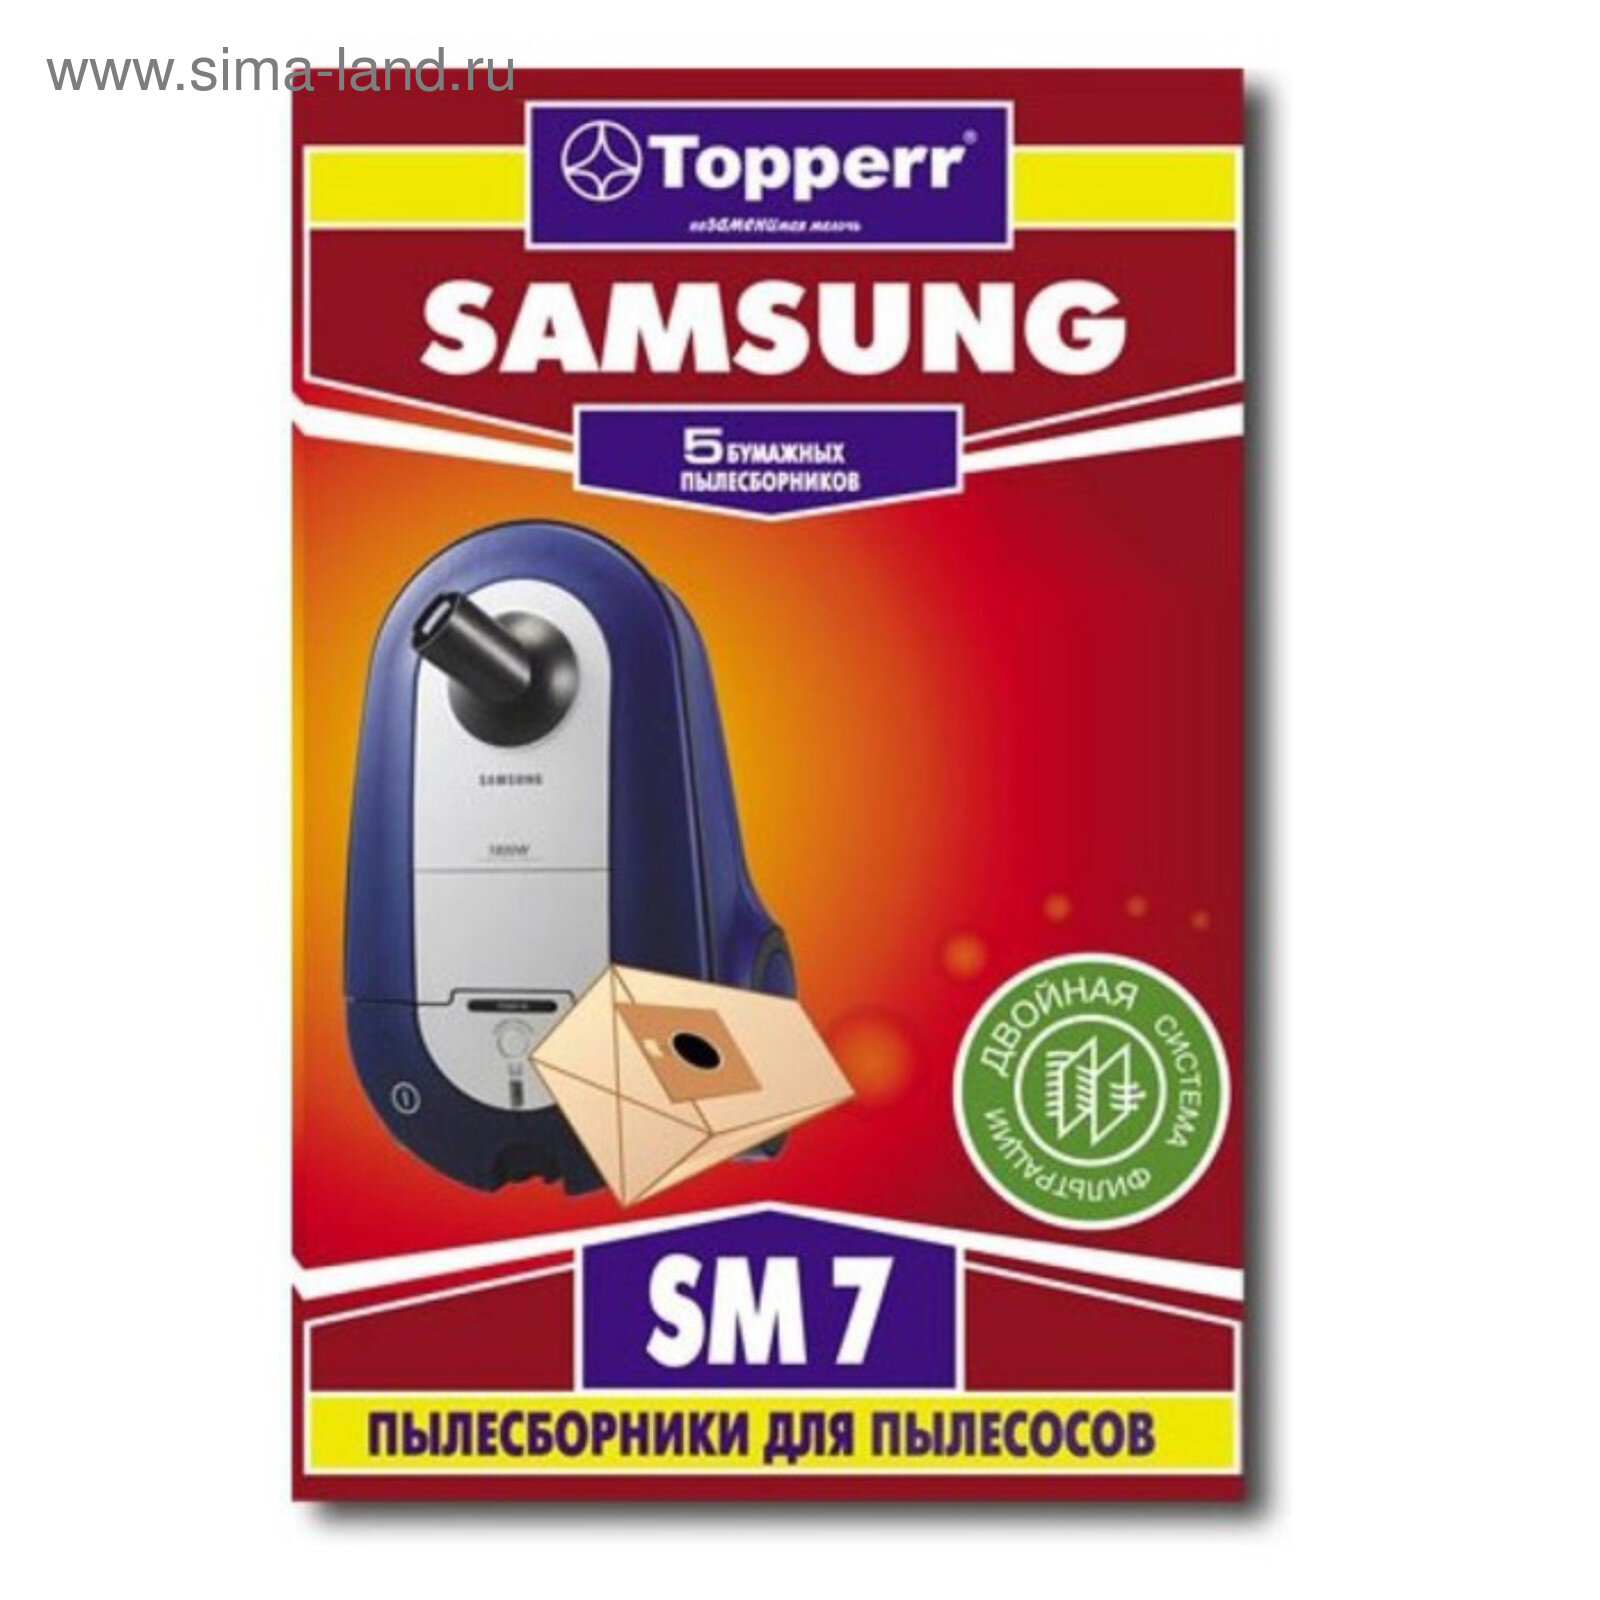 Бумажный пылесборник Тopperr SM 7 для пылесосов